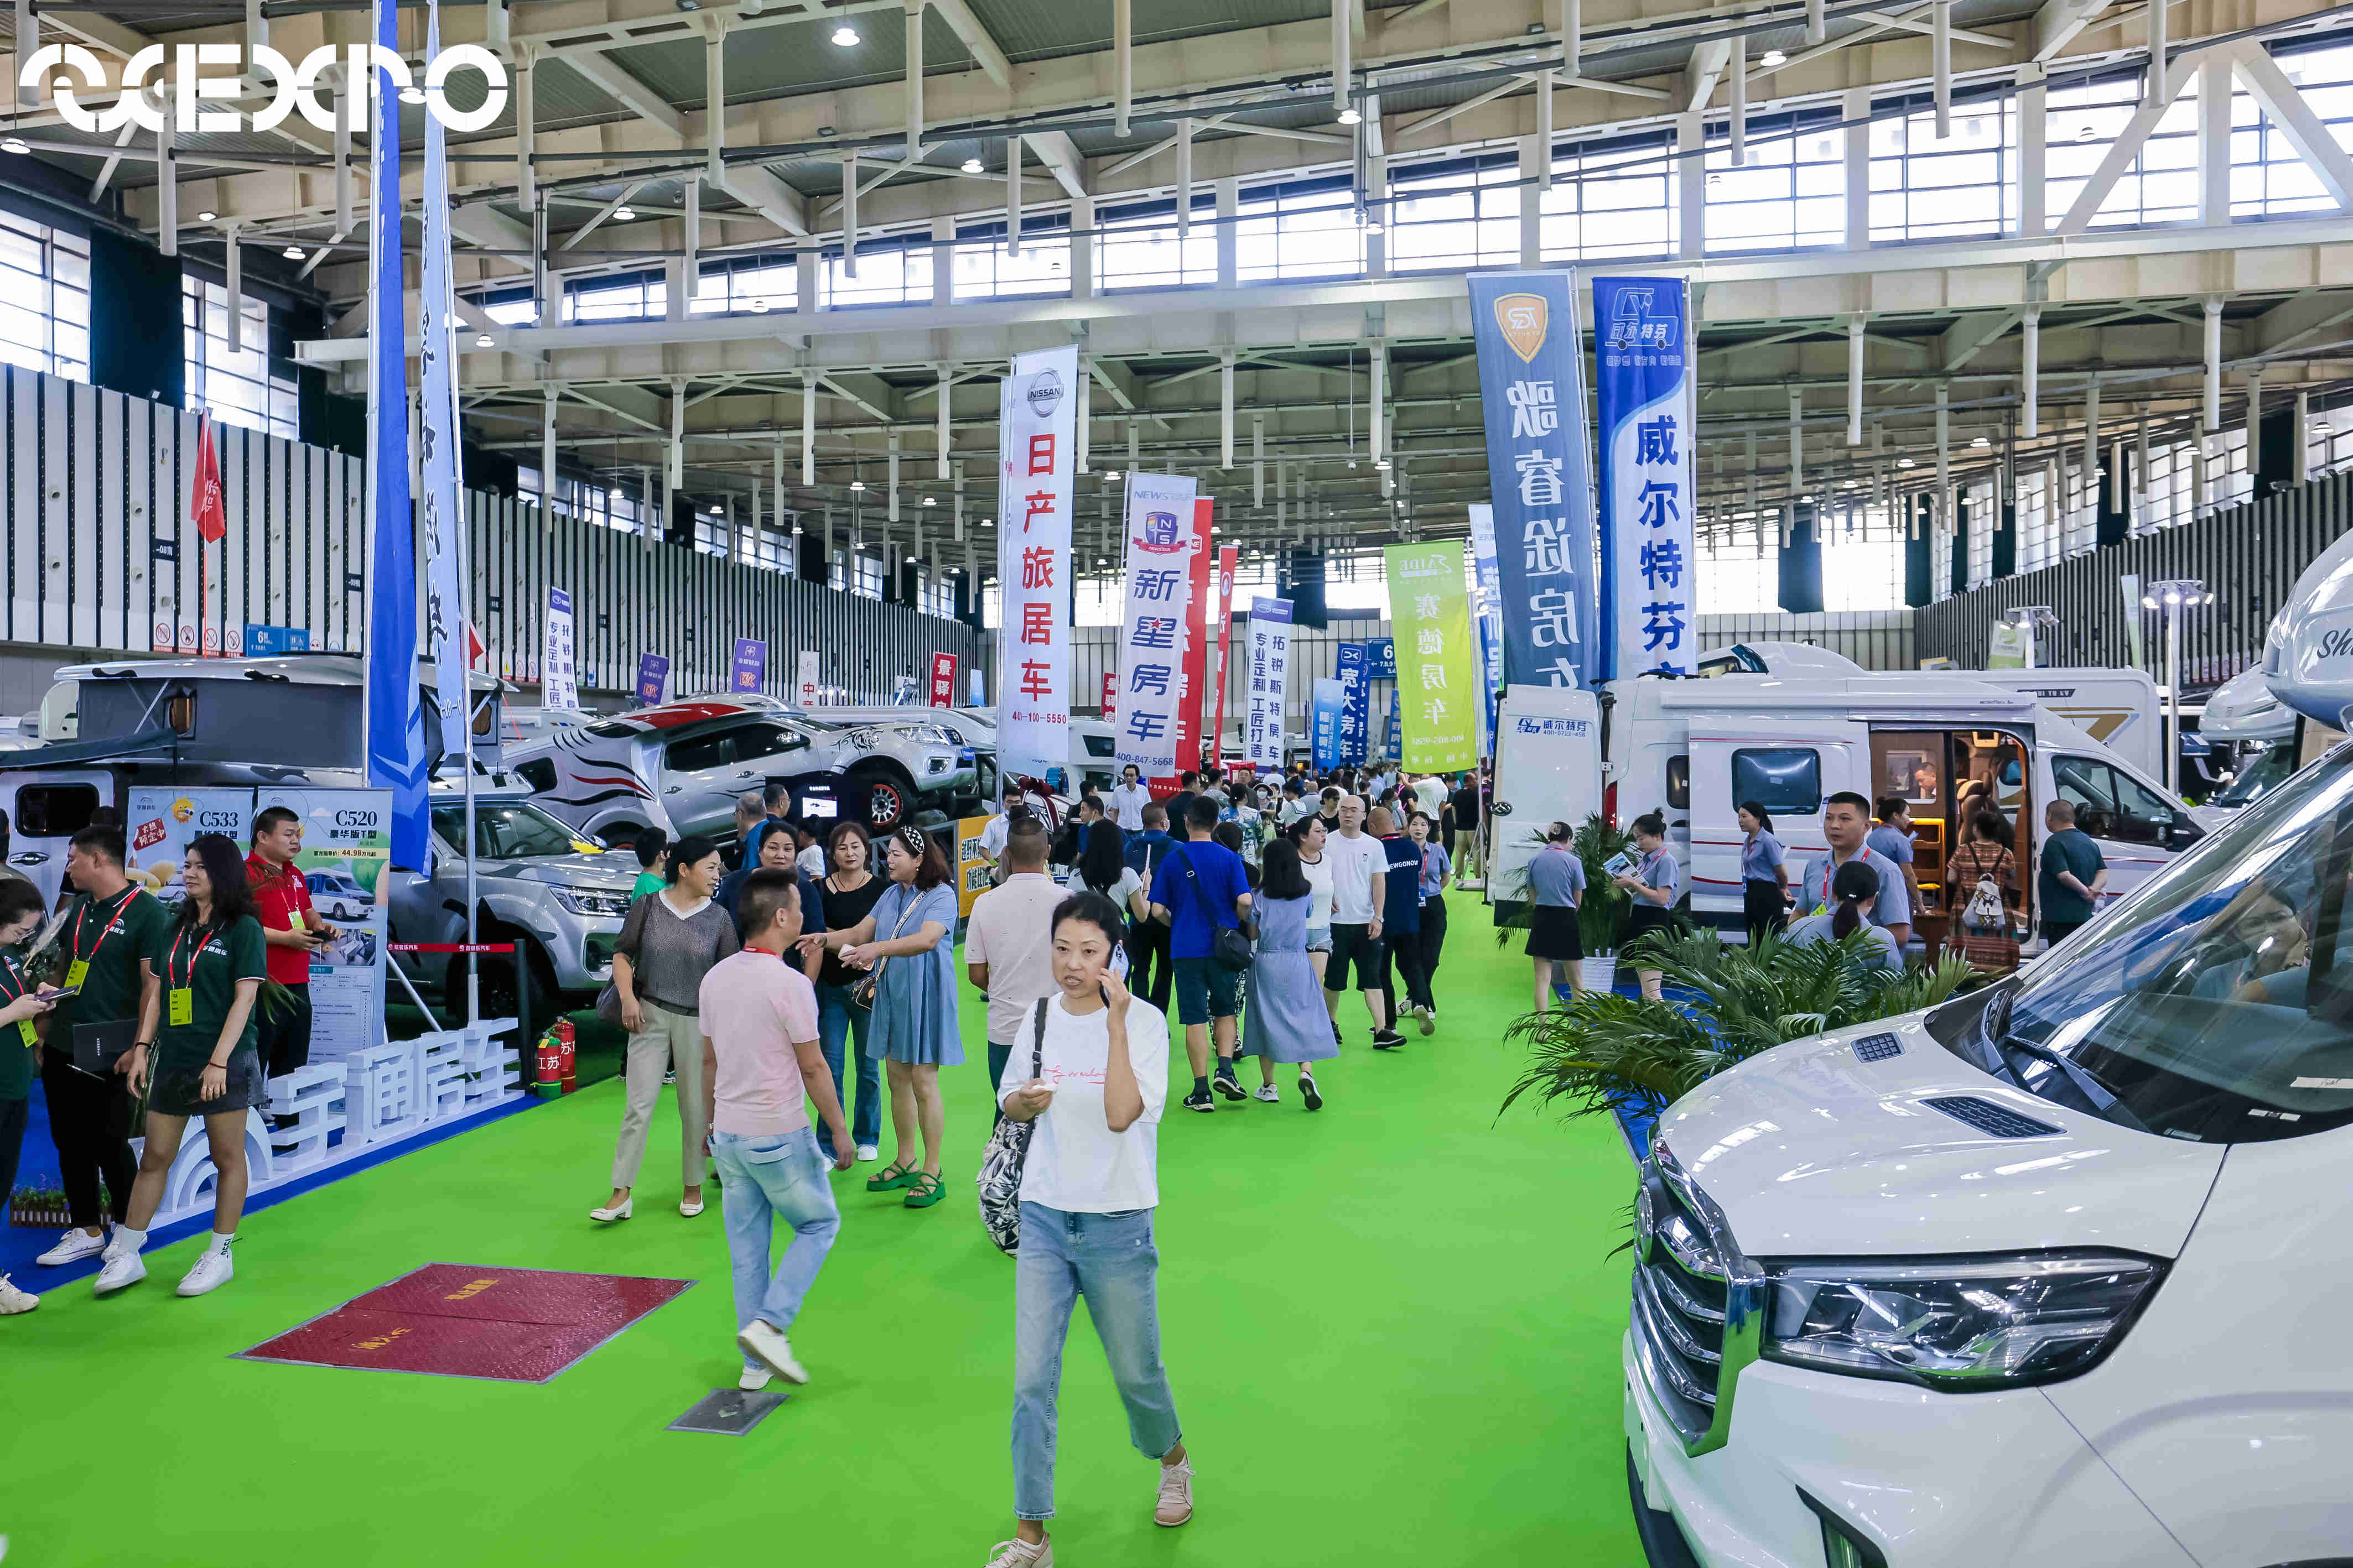 励为展览官网 - 上海国际车展 | 北京国际车展 | 国际汽车创新技术周 | 新能源汽车技术展览会 | 国际汽车工业展览会 | 智能网联汽车展览会